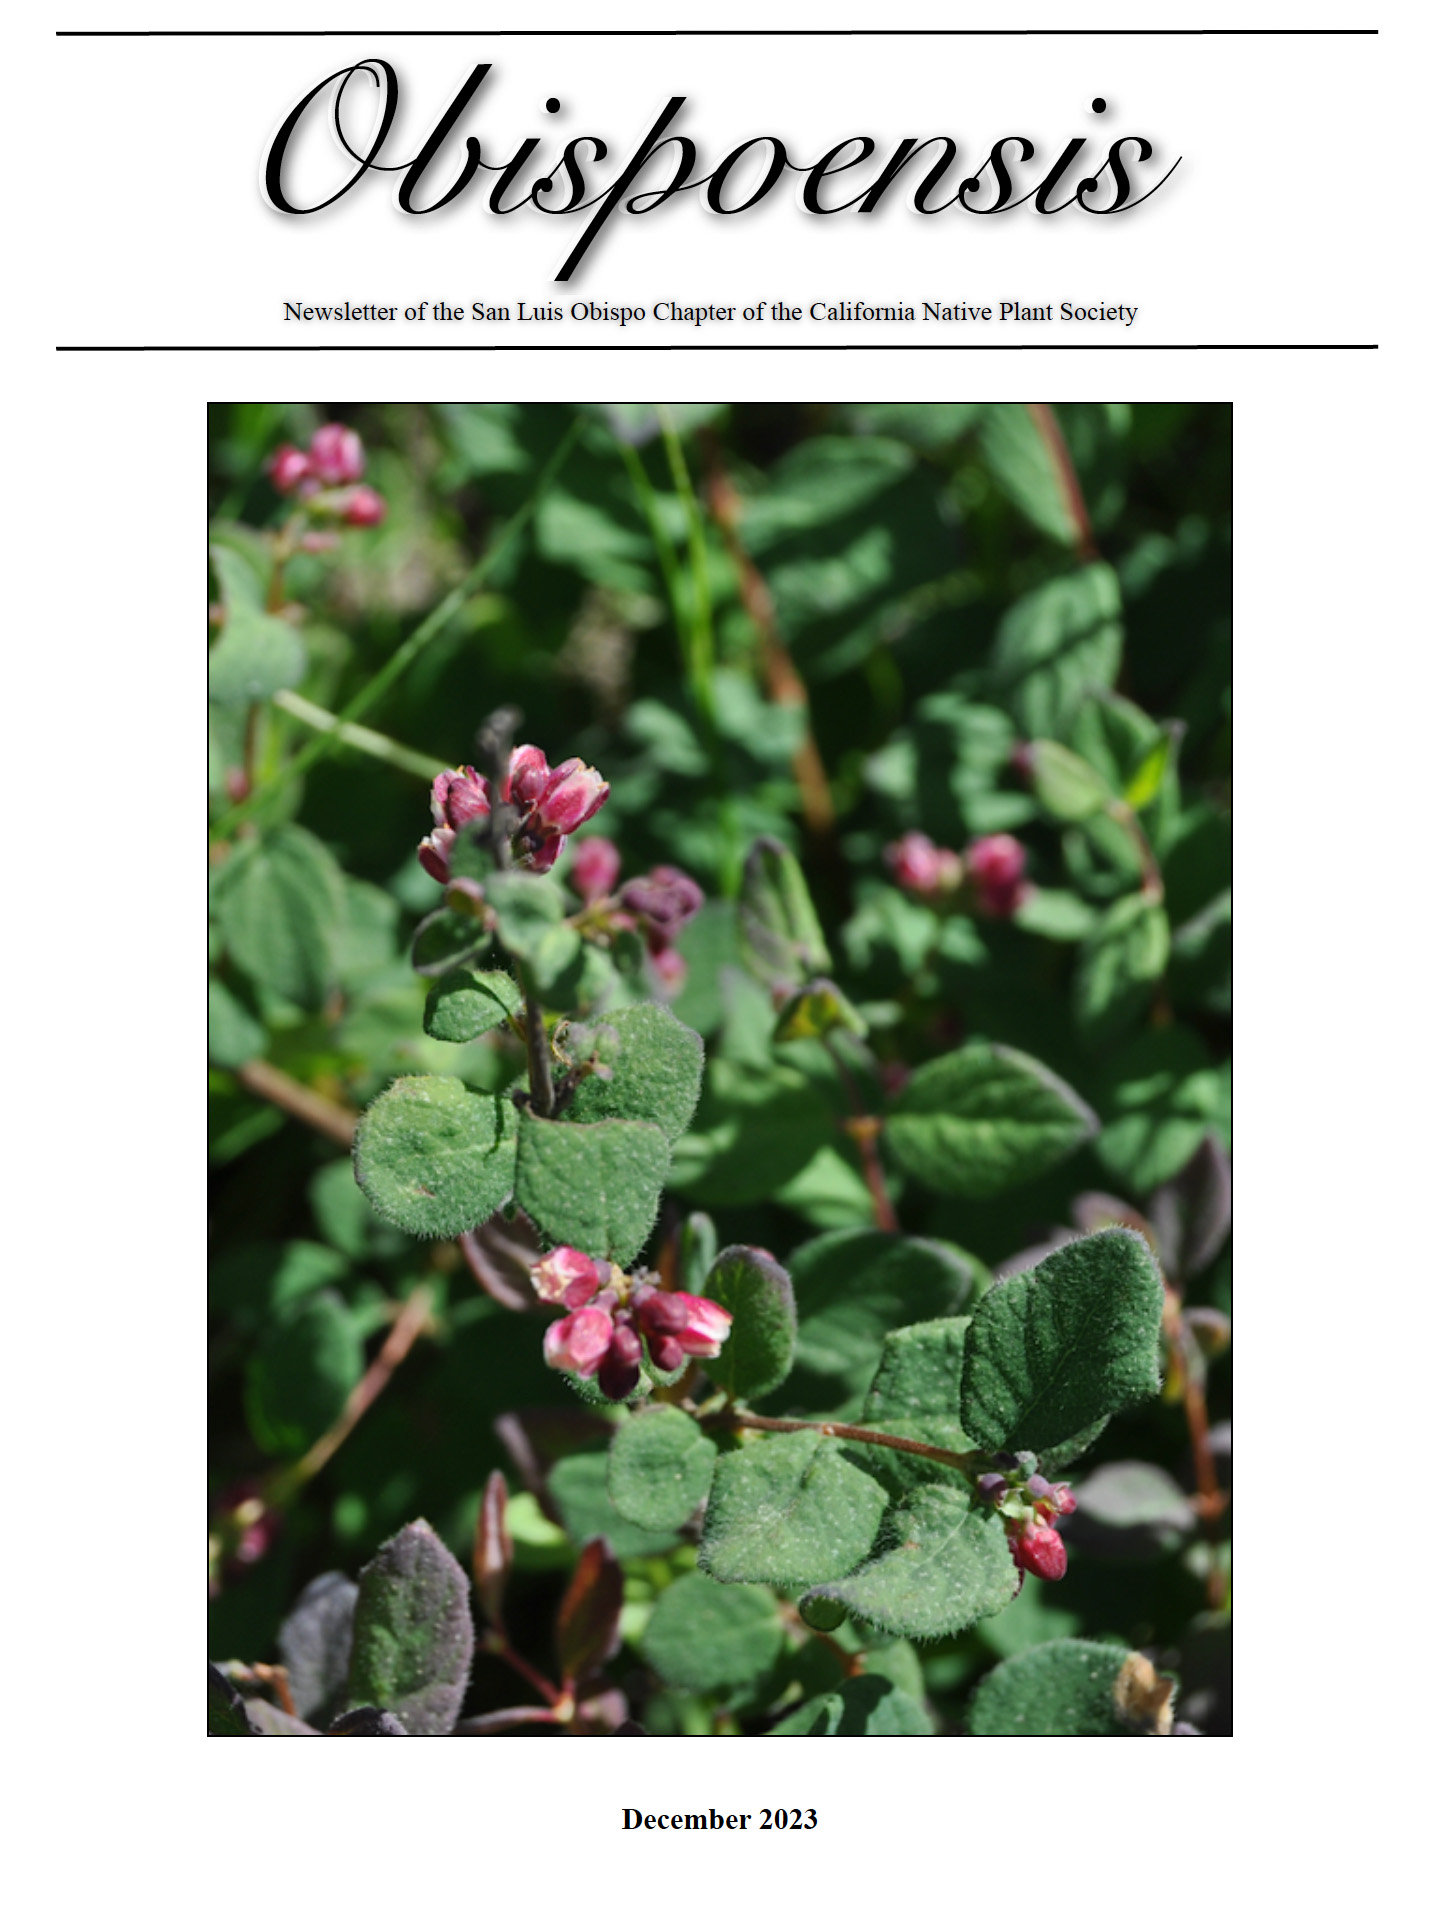 November 2023 Obispoensis Newsletter California Native Plant Society SLO